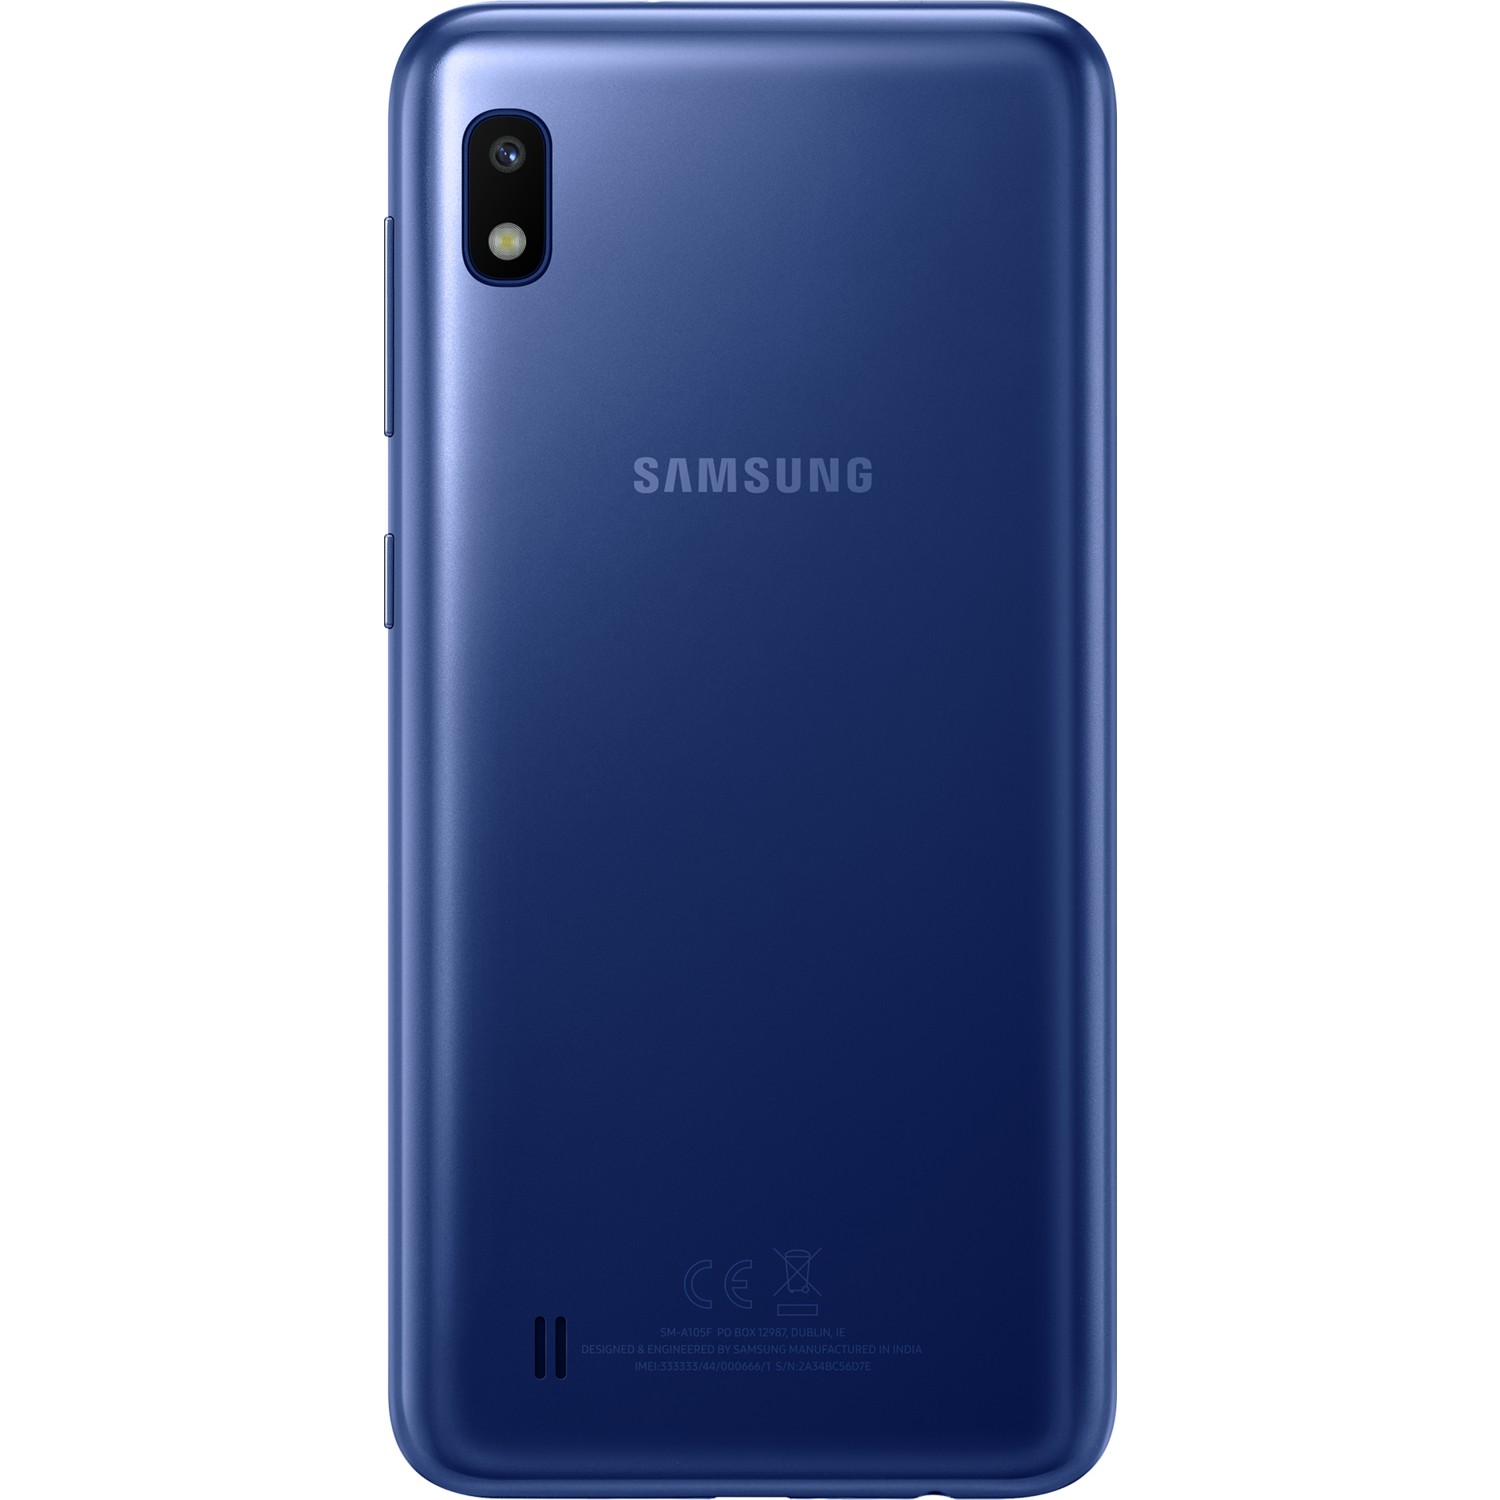 Doğu Timor iç çocukluk  Yenilenmiş Samsung Galaxy A10 32 GB (12 Ay Garantili) Fiyatı